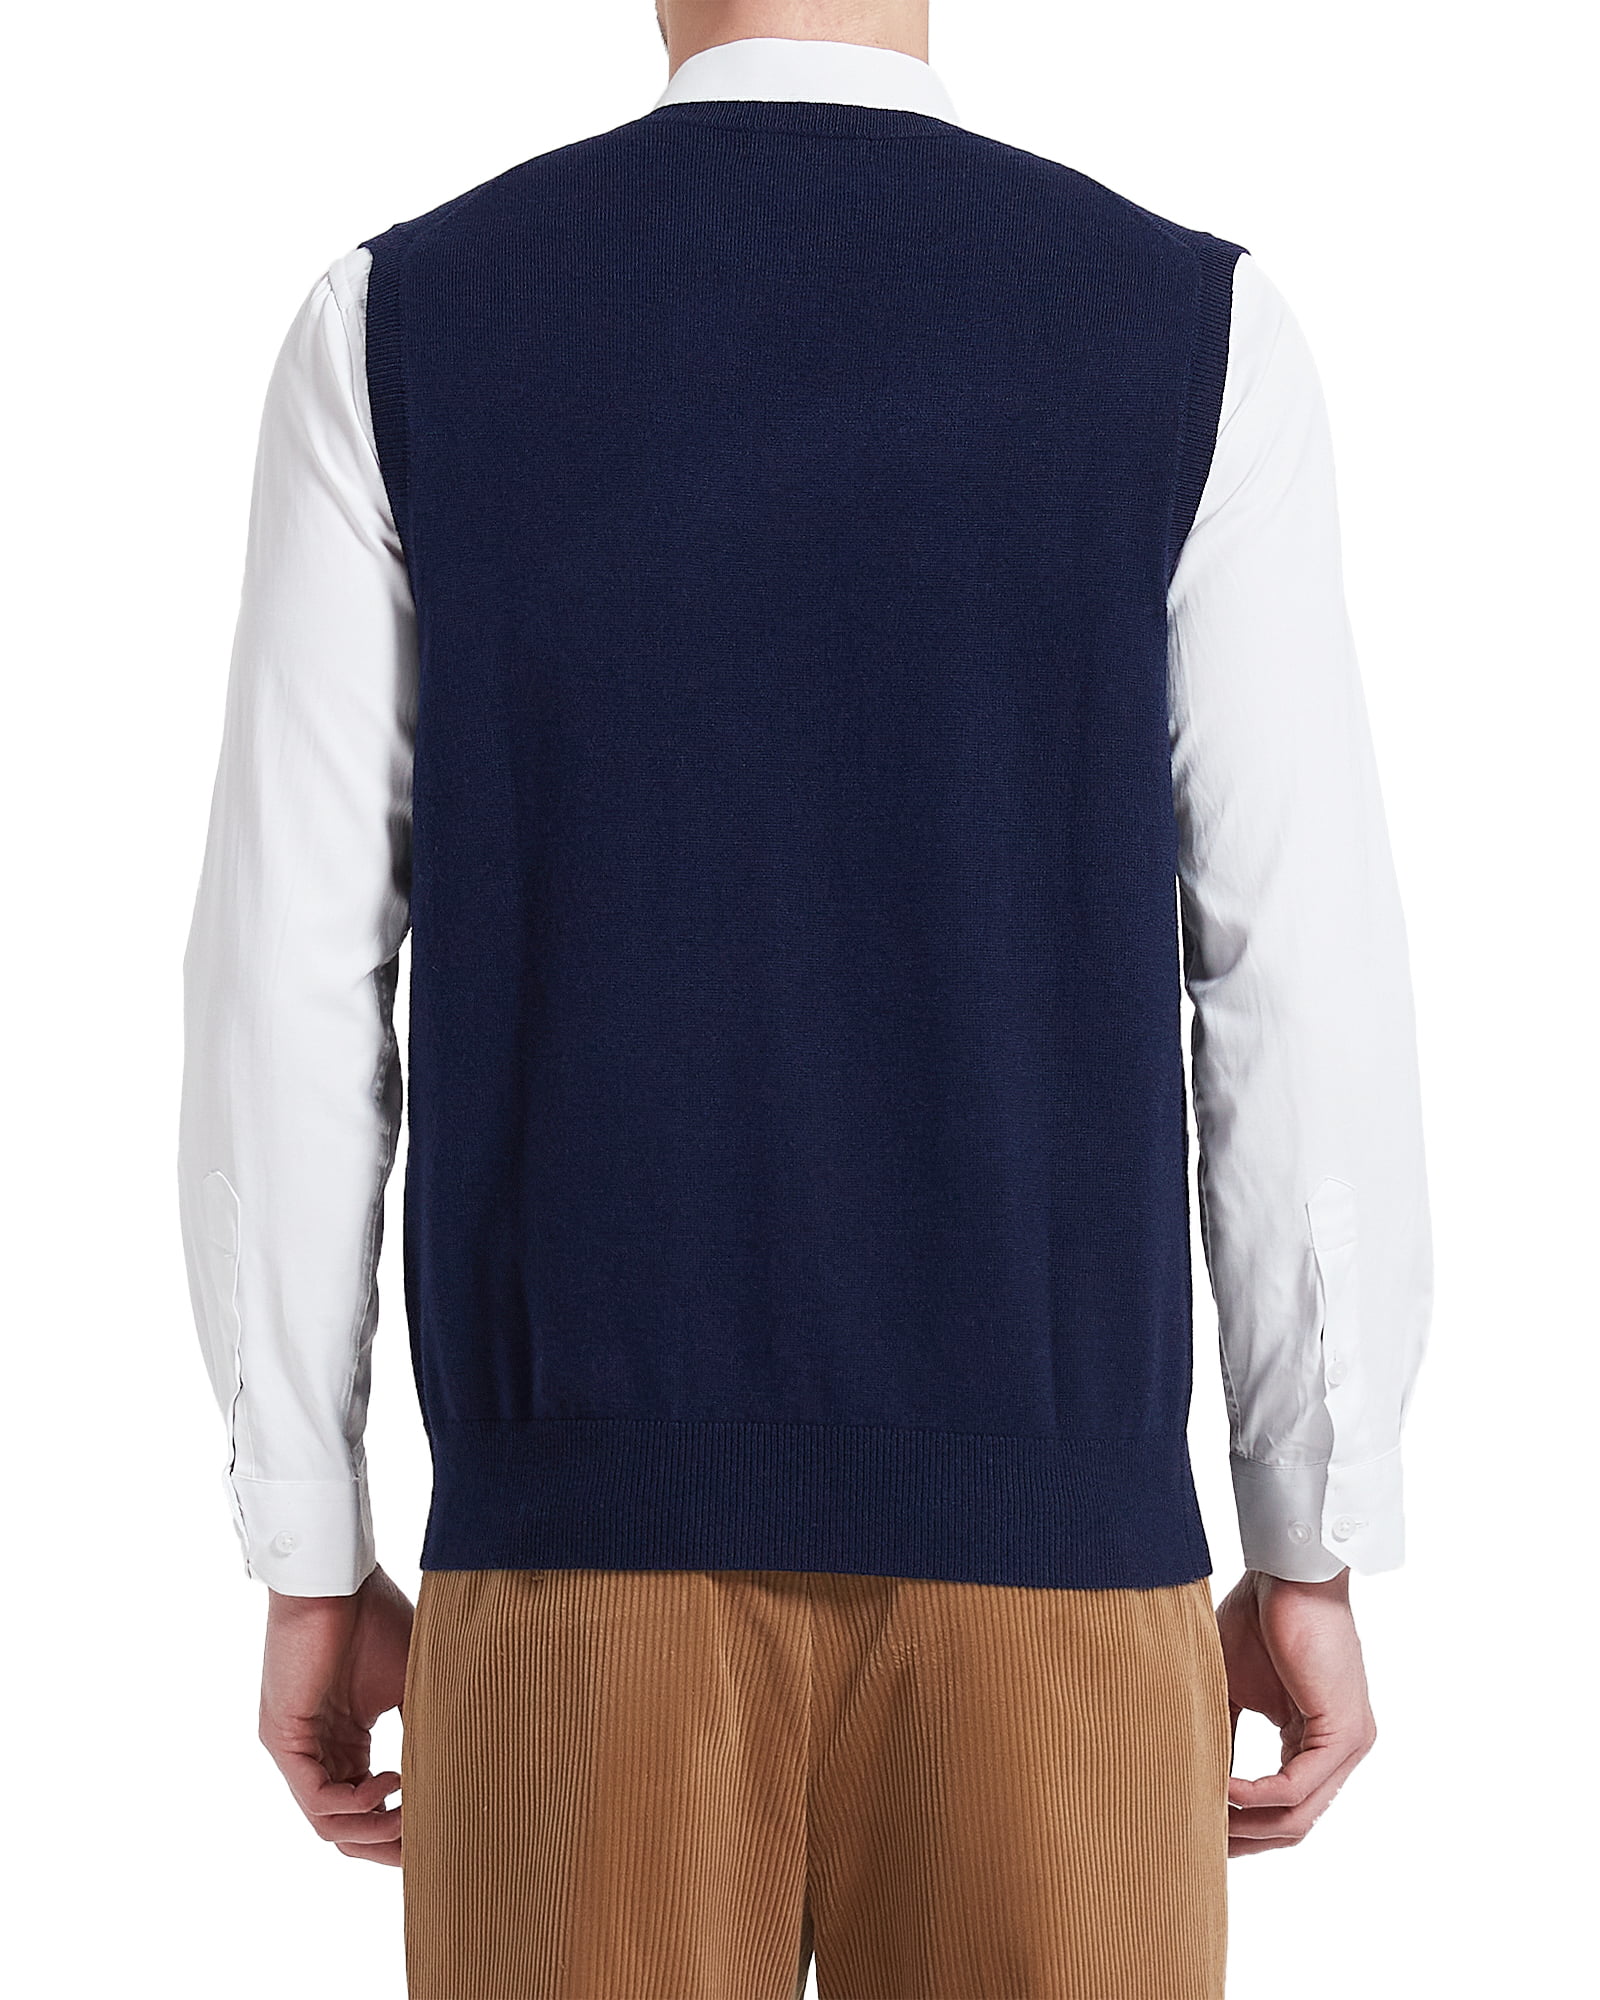 Kallspin Men's Vest Sweater Wool Blend Lightweight V Neck Sleeveless  Pullover(Burgundy Red,X-Large)